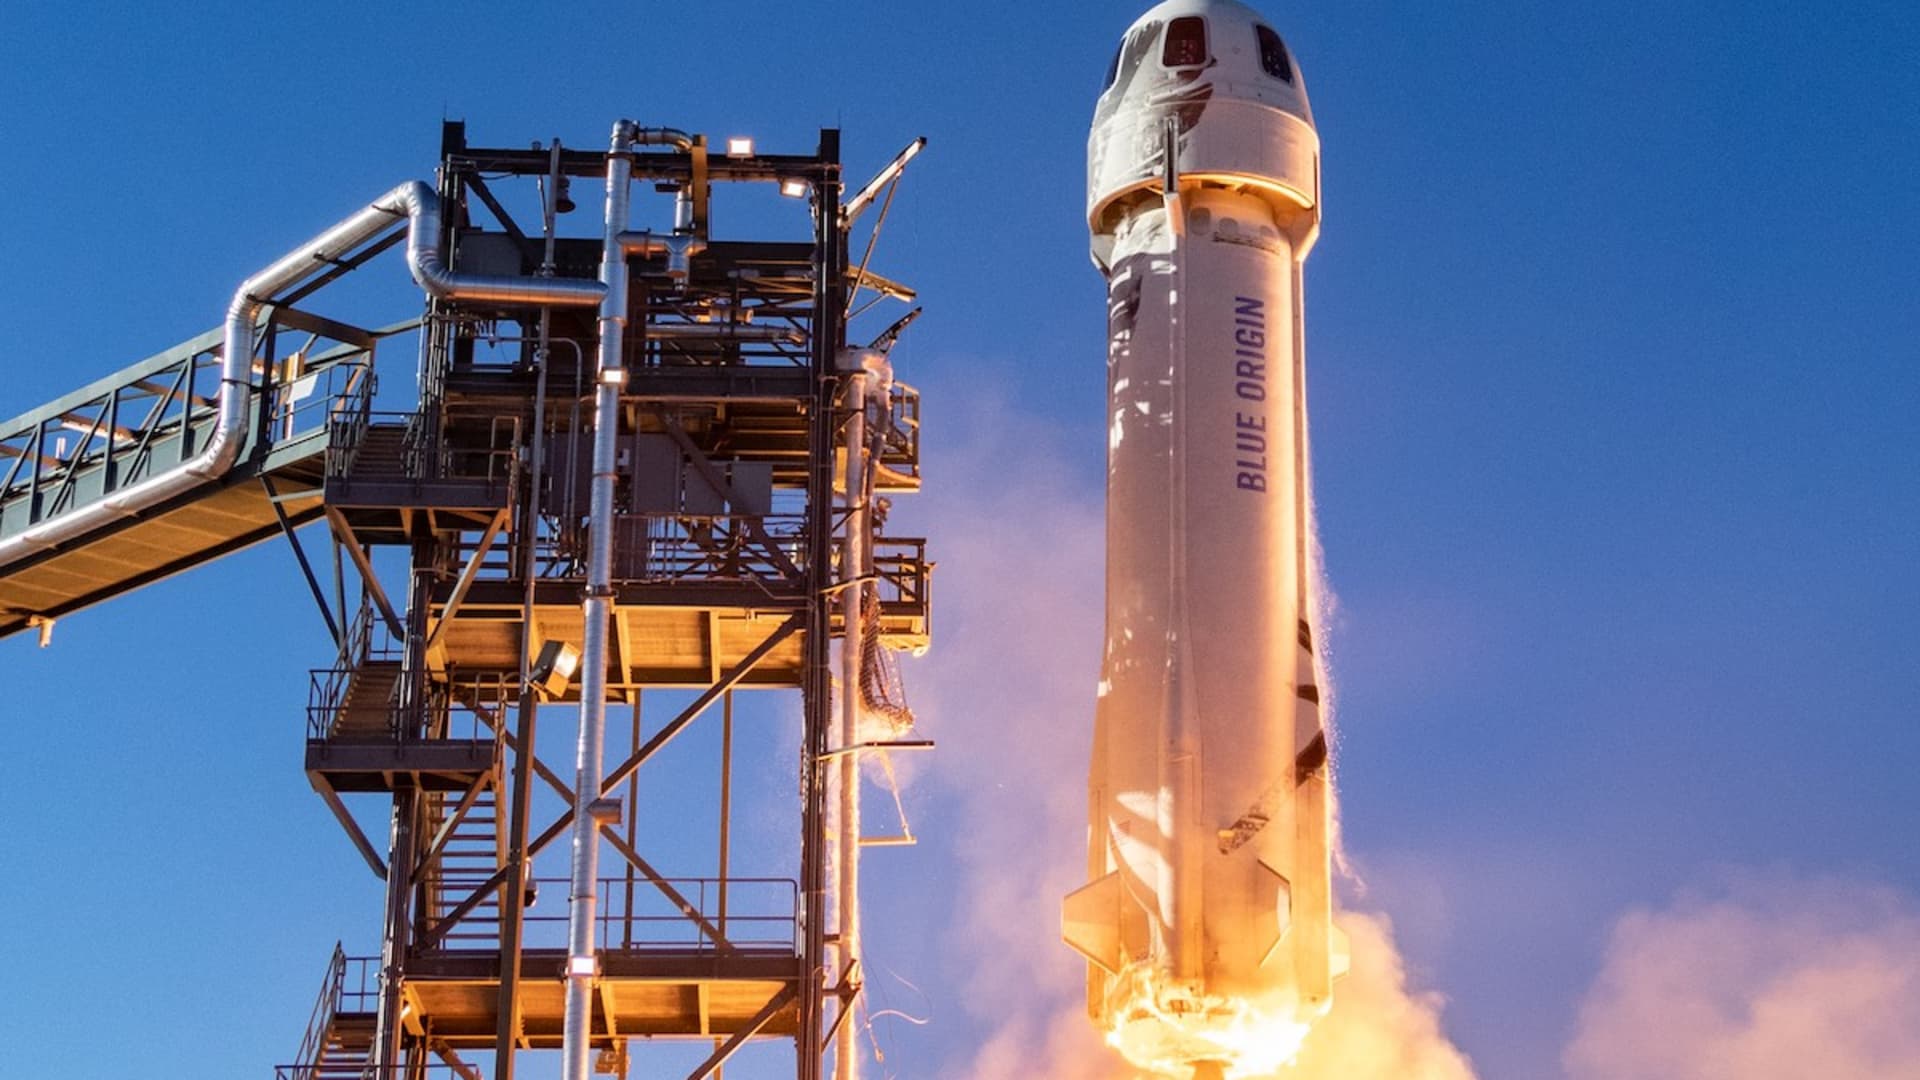 Jeff Bezos' Blue Origin space tourism flight launches July 20